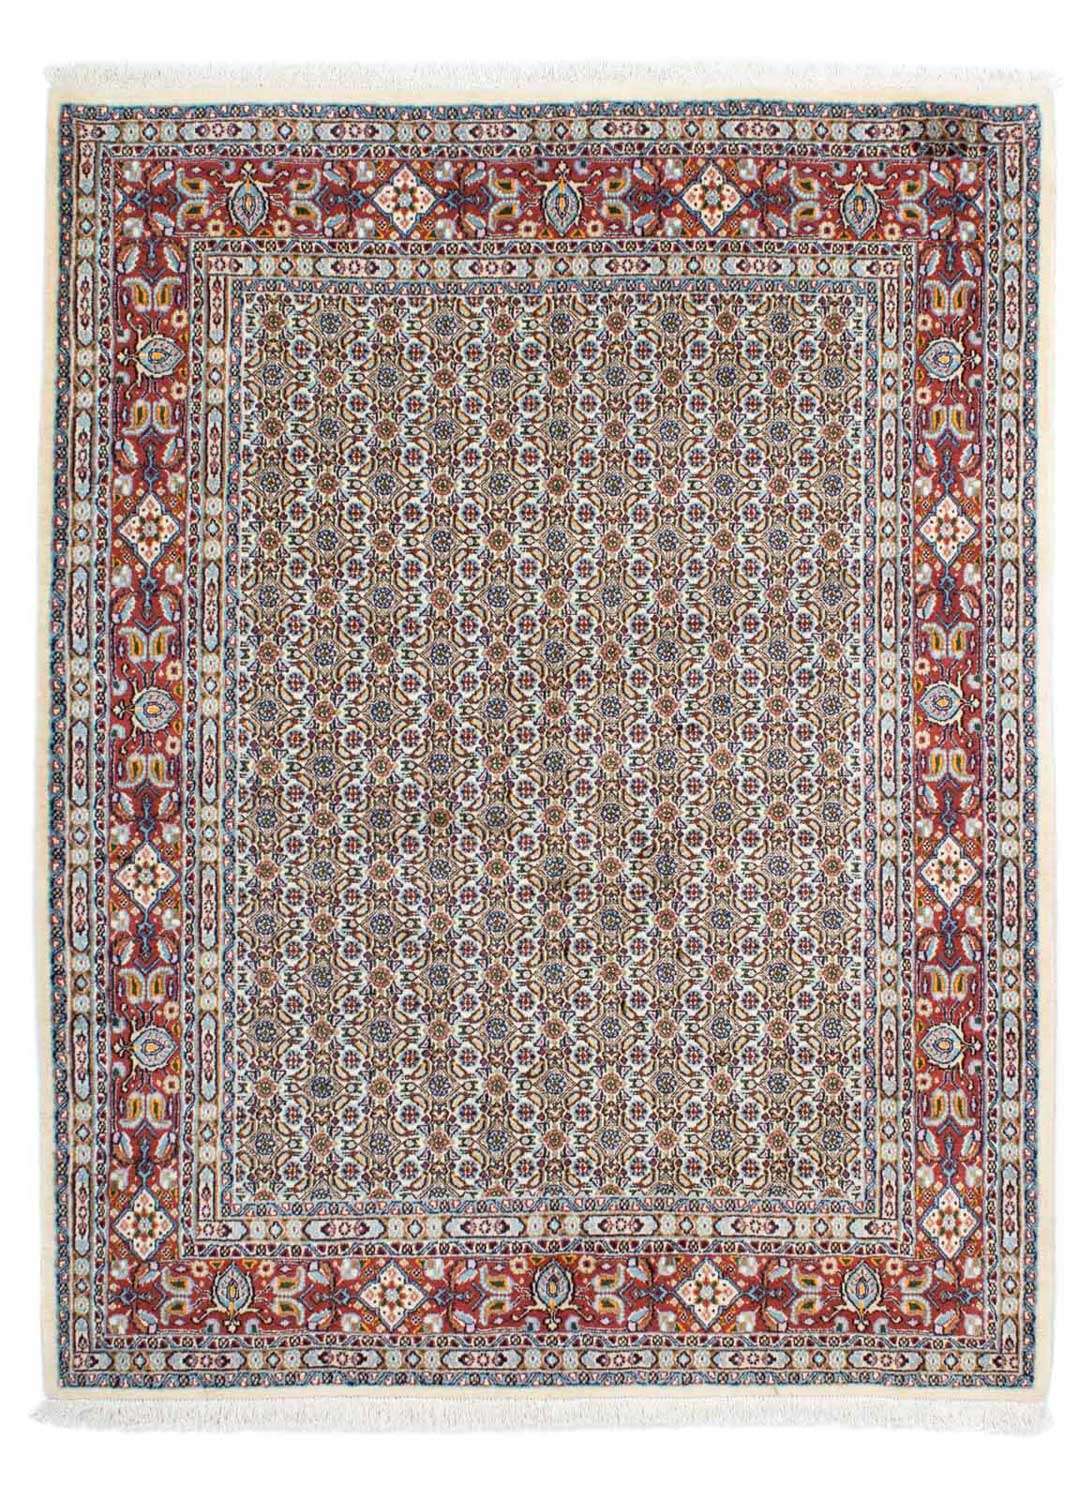 Persisk teppe - klassisk - 192 x 150 cm - beige